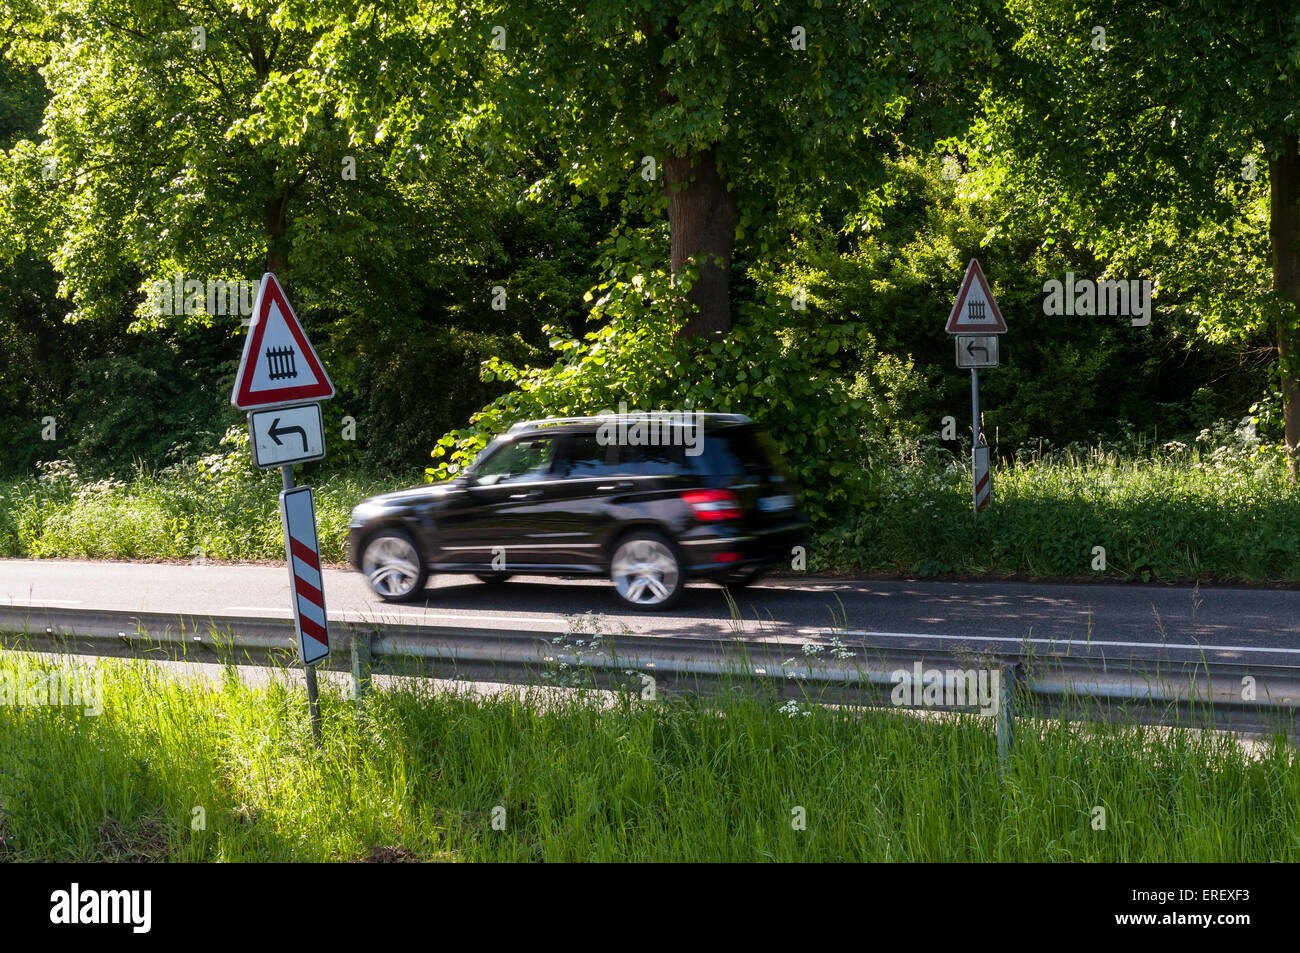 Route de campagne avec voiture passant et les signes d'un passage à niveau fermé à gauche, de l'Allemagne. Banque D'Images